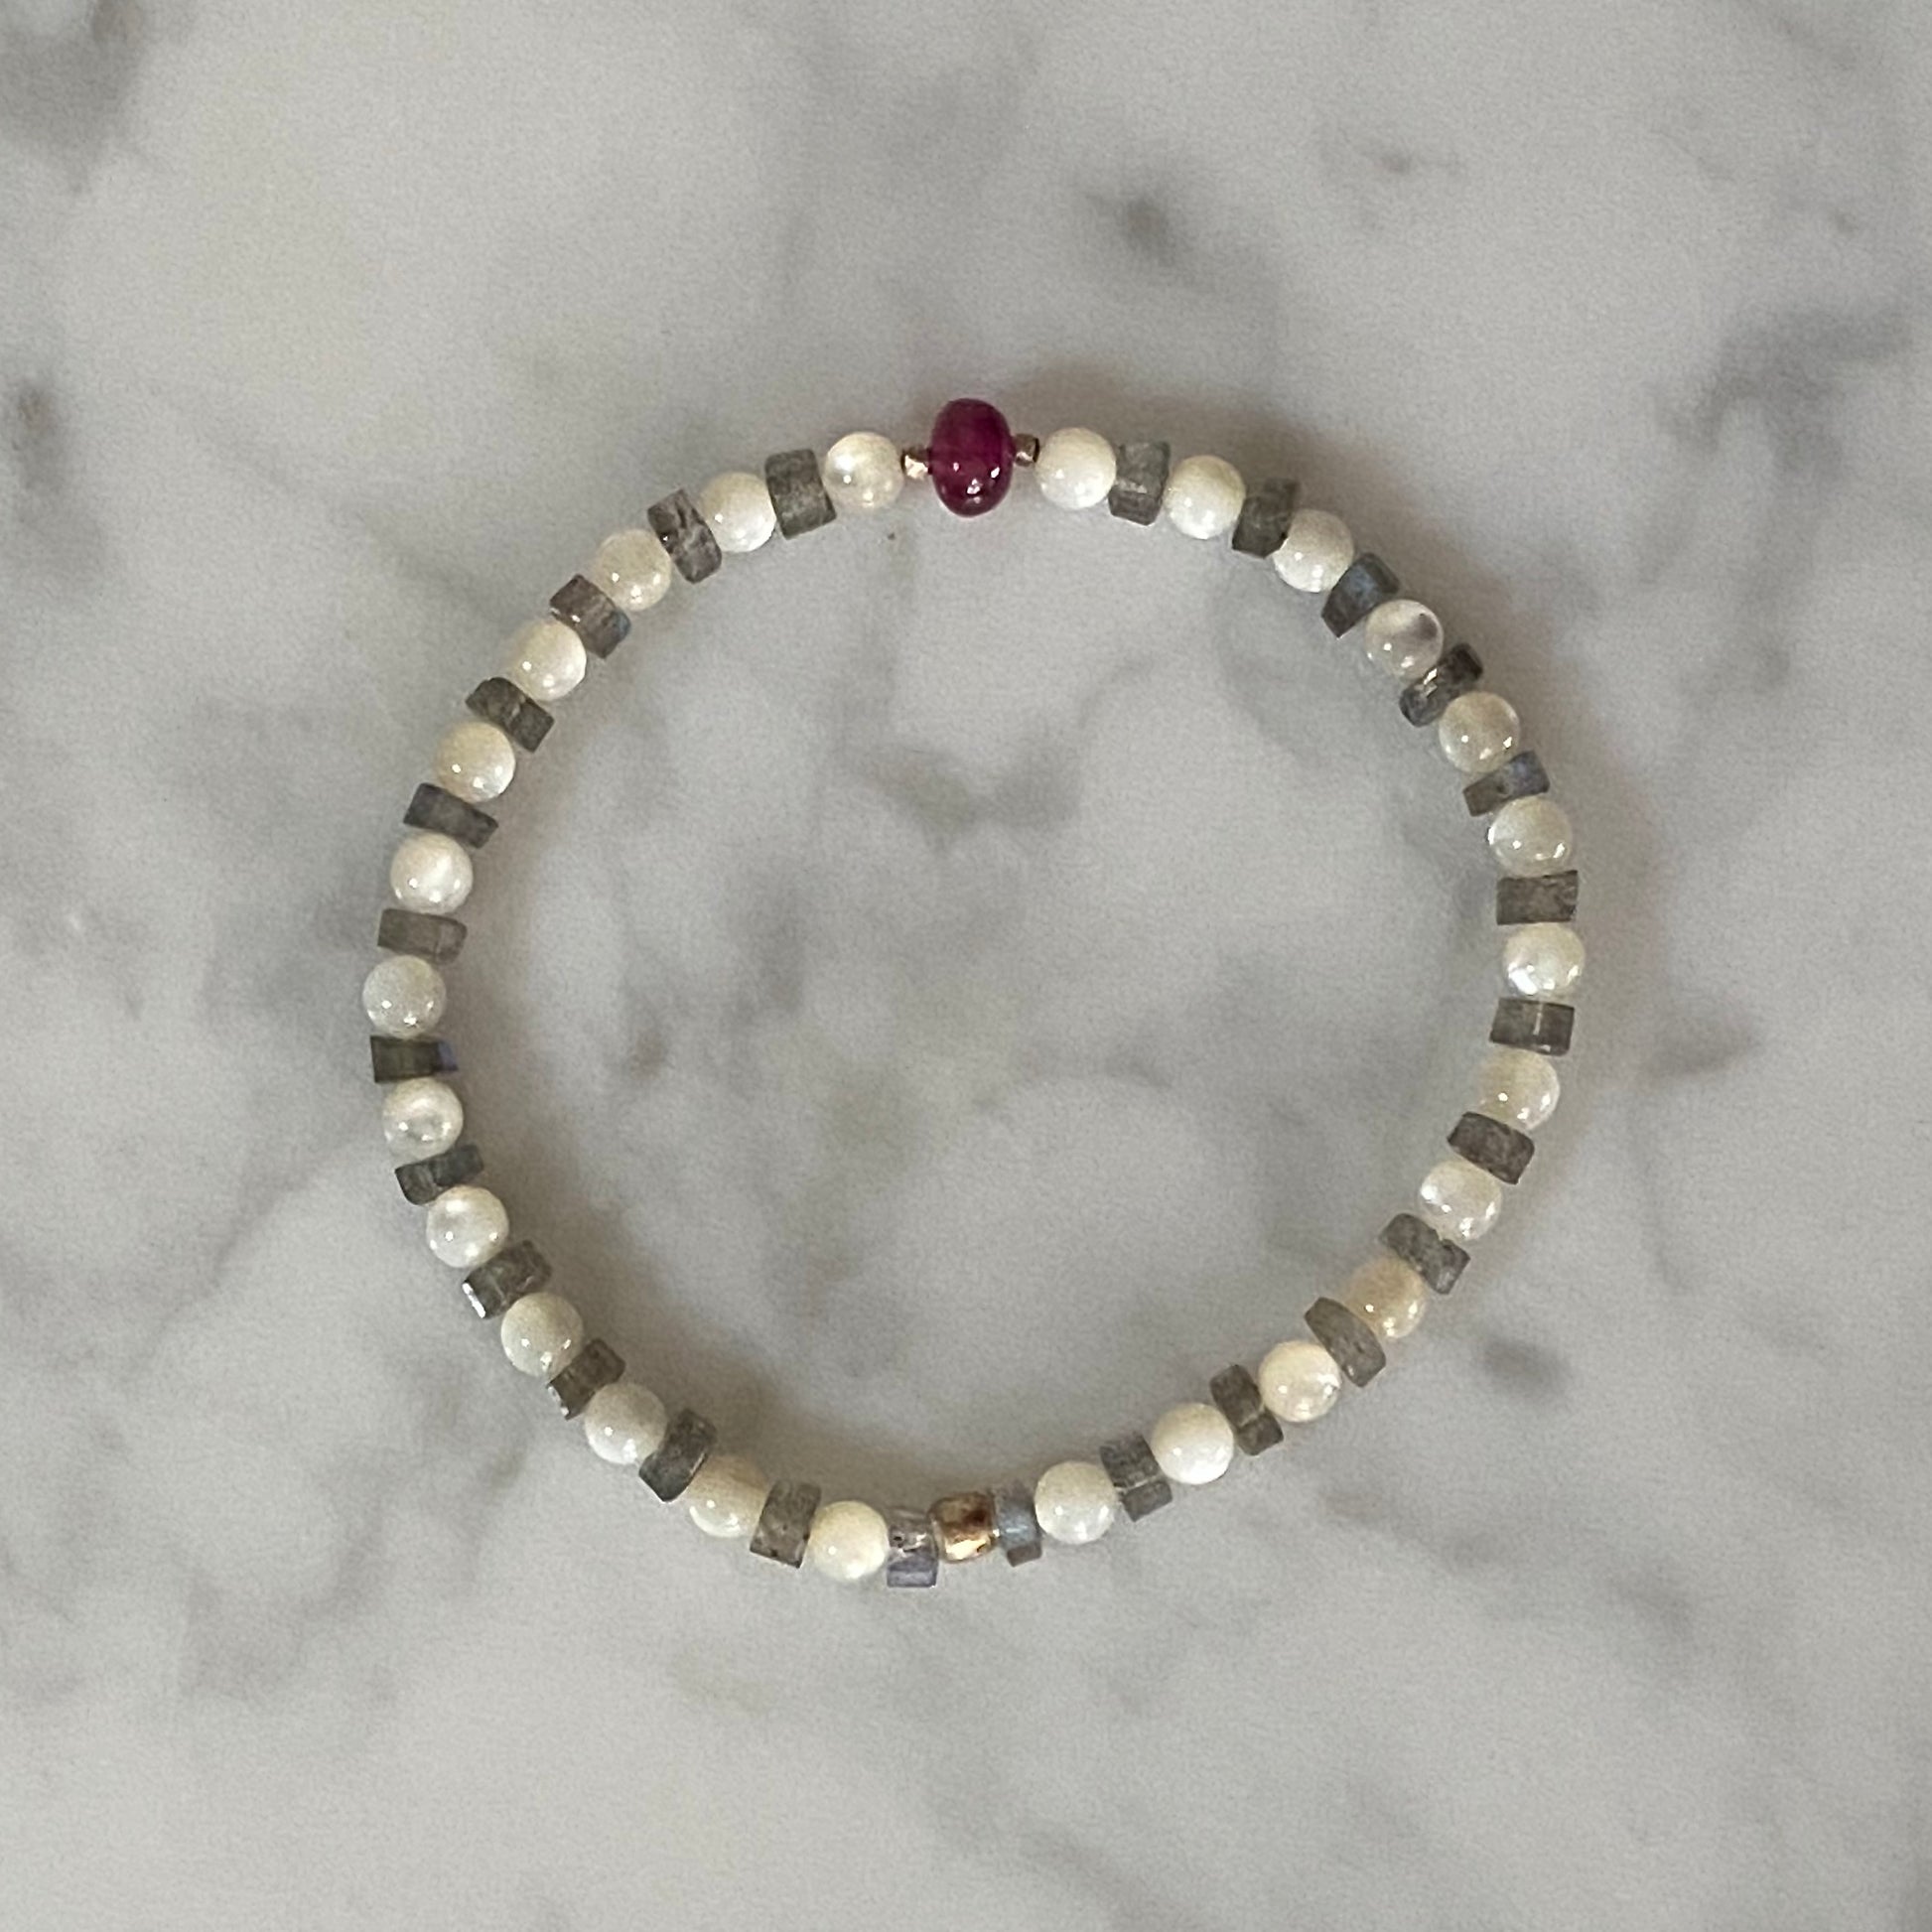 Ruby, labradorite, mother of pearl gemstone stretch bracelet / Arpaia Jewelry